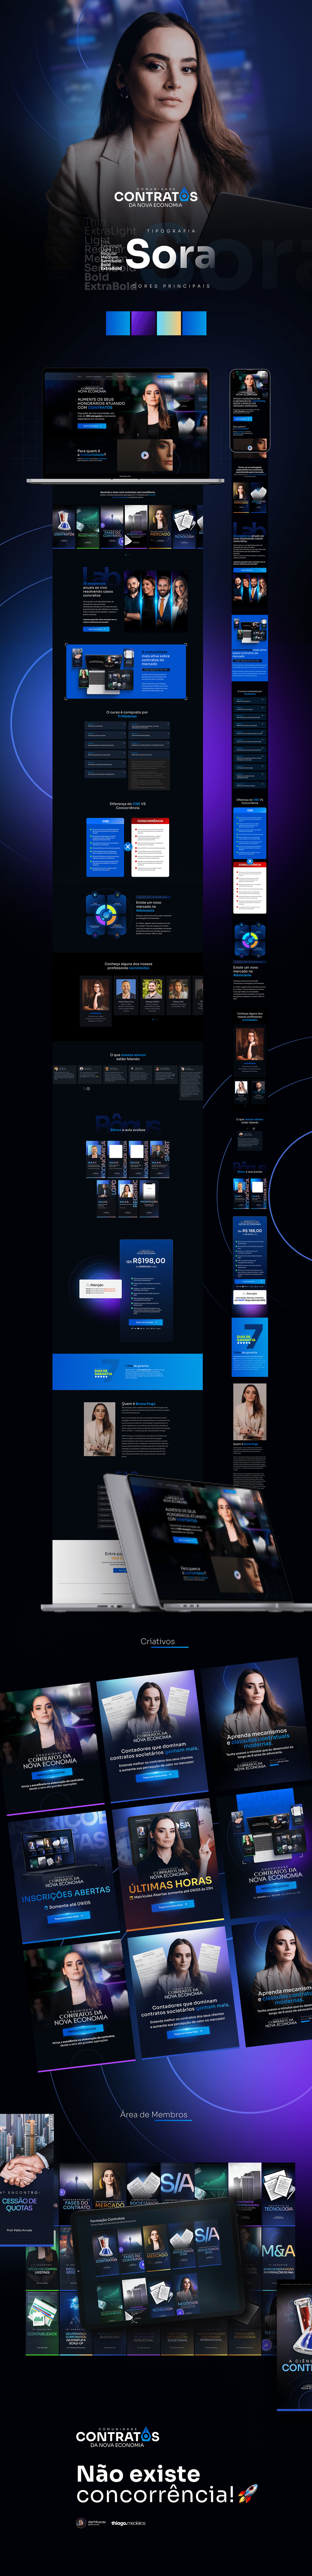 Adovocacia alefmiranda criativos infoproduto lançamento lançamentos landing page marketing digital pagina de vendas